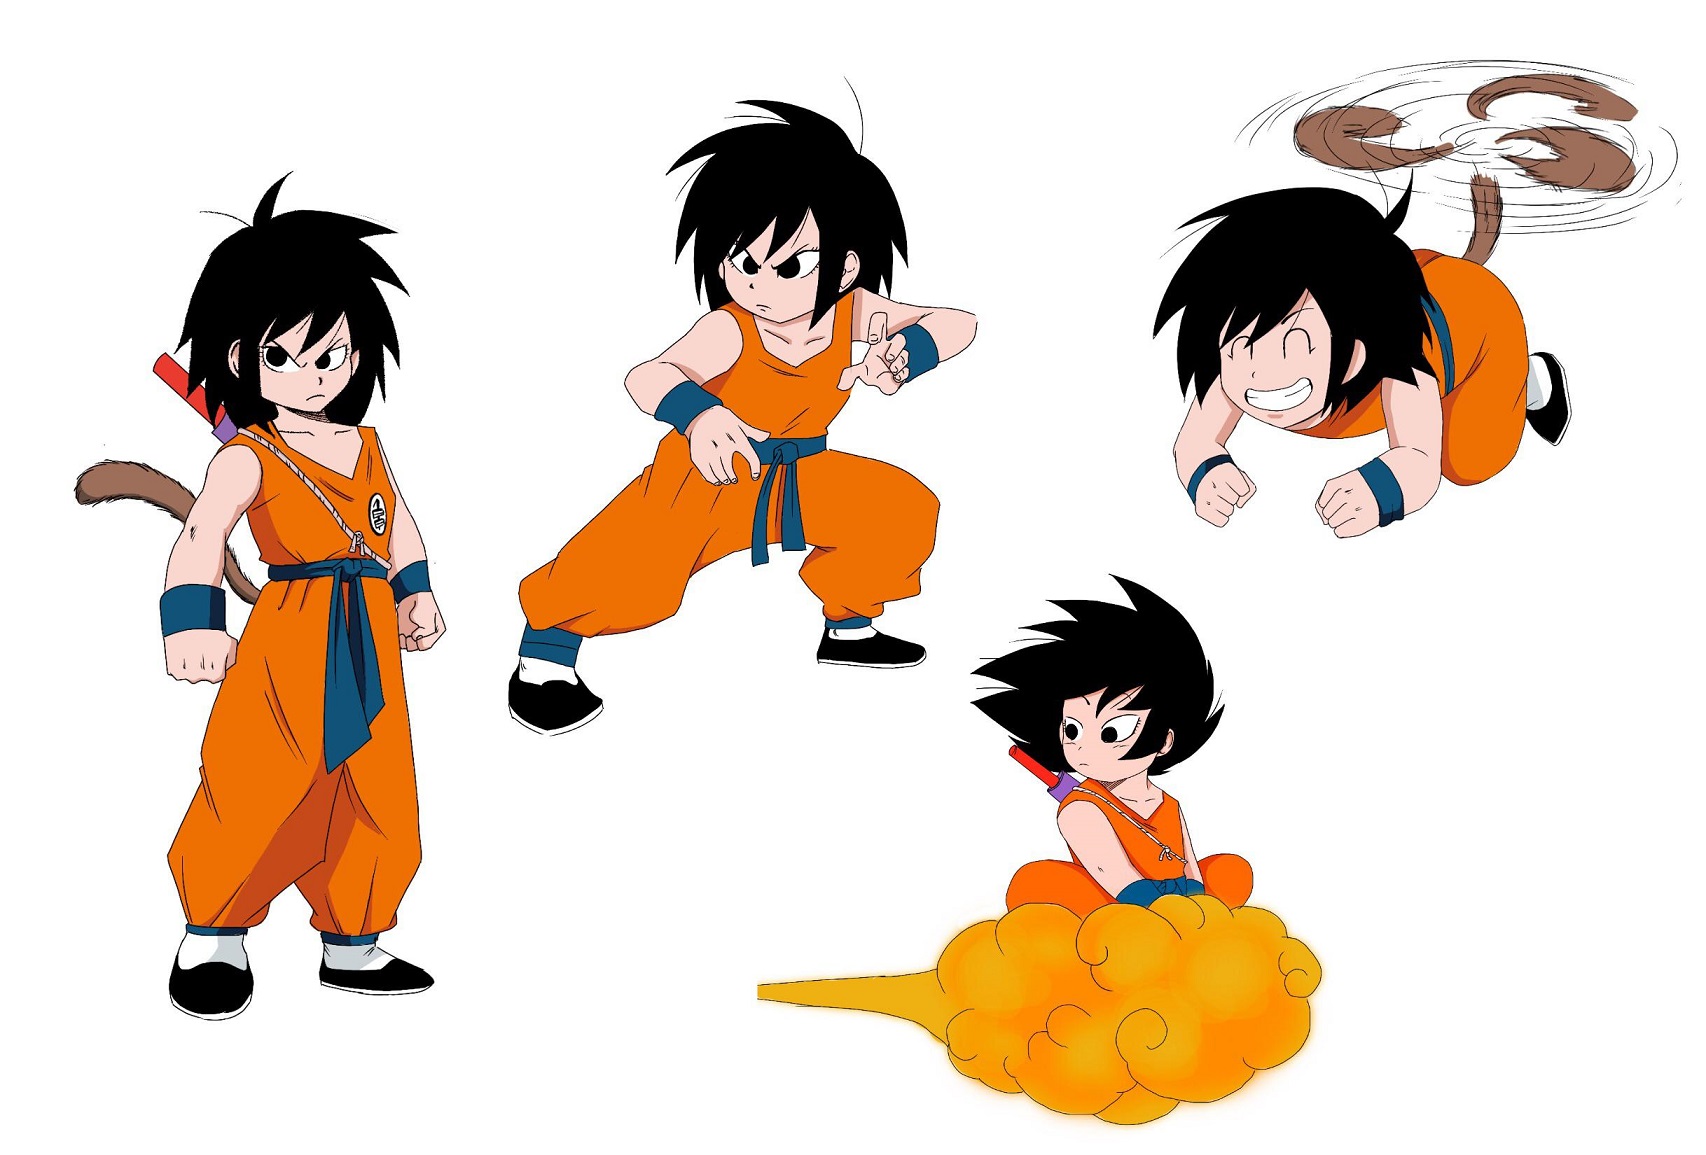 Artista imaginou como seria o visual de Goku se ele tivesse puxado a sua mãe